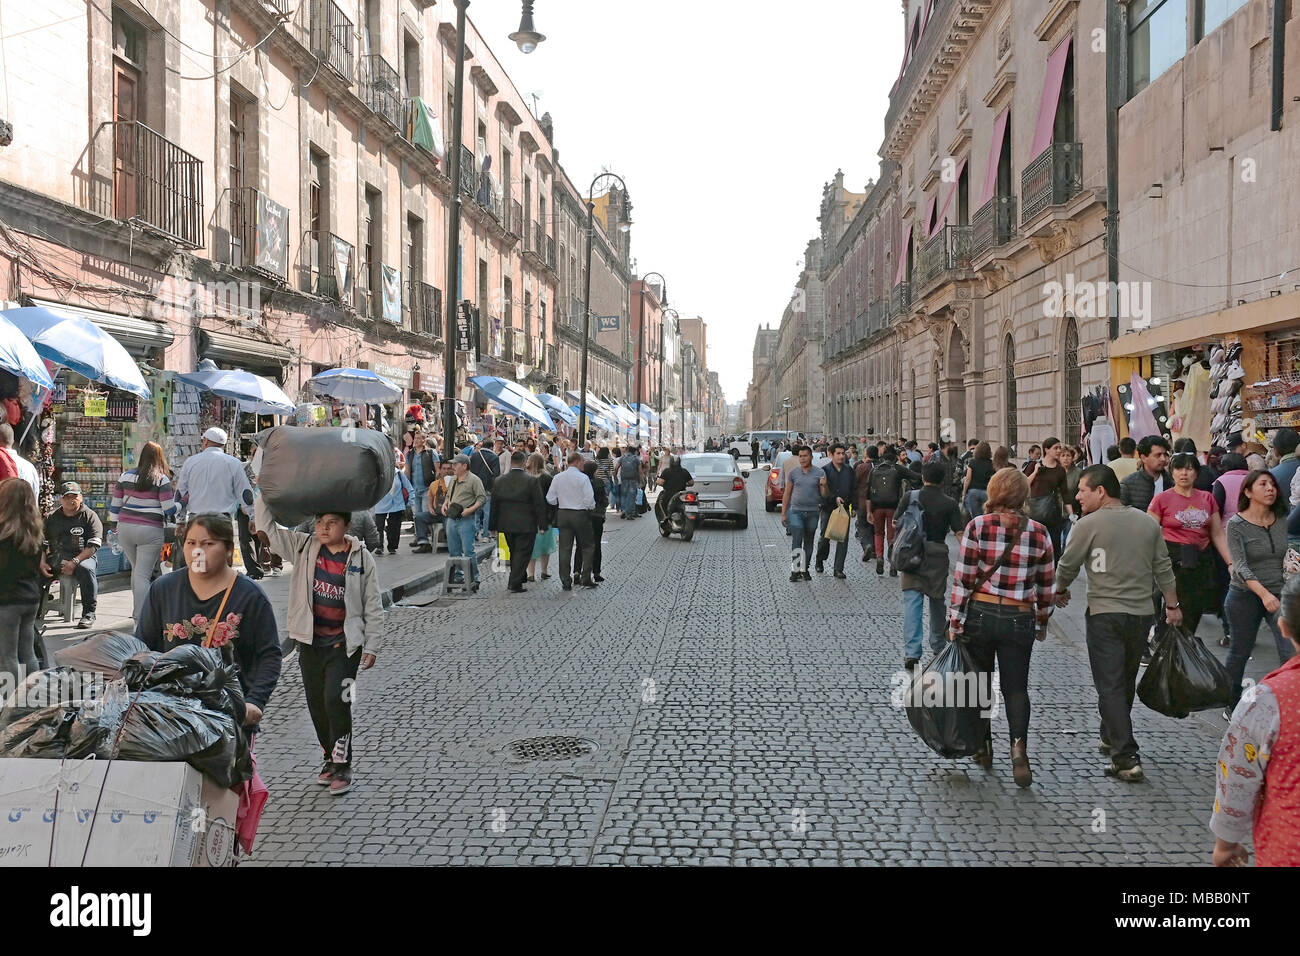 El centro histórico de la Ciudad de México está llena de calles bulliciosas con el comercio dinámico y personas que crean un paisaje urbano único mexicano Foto de stock